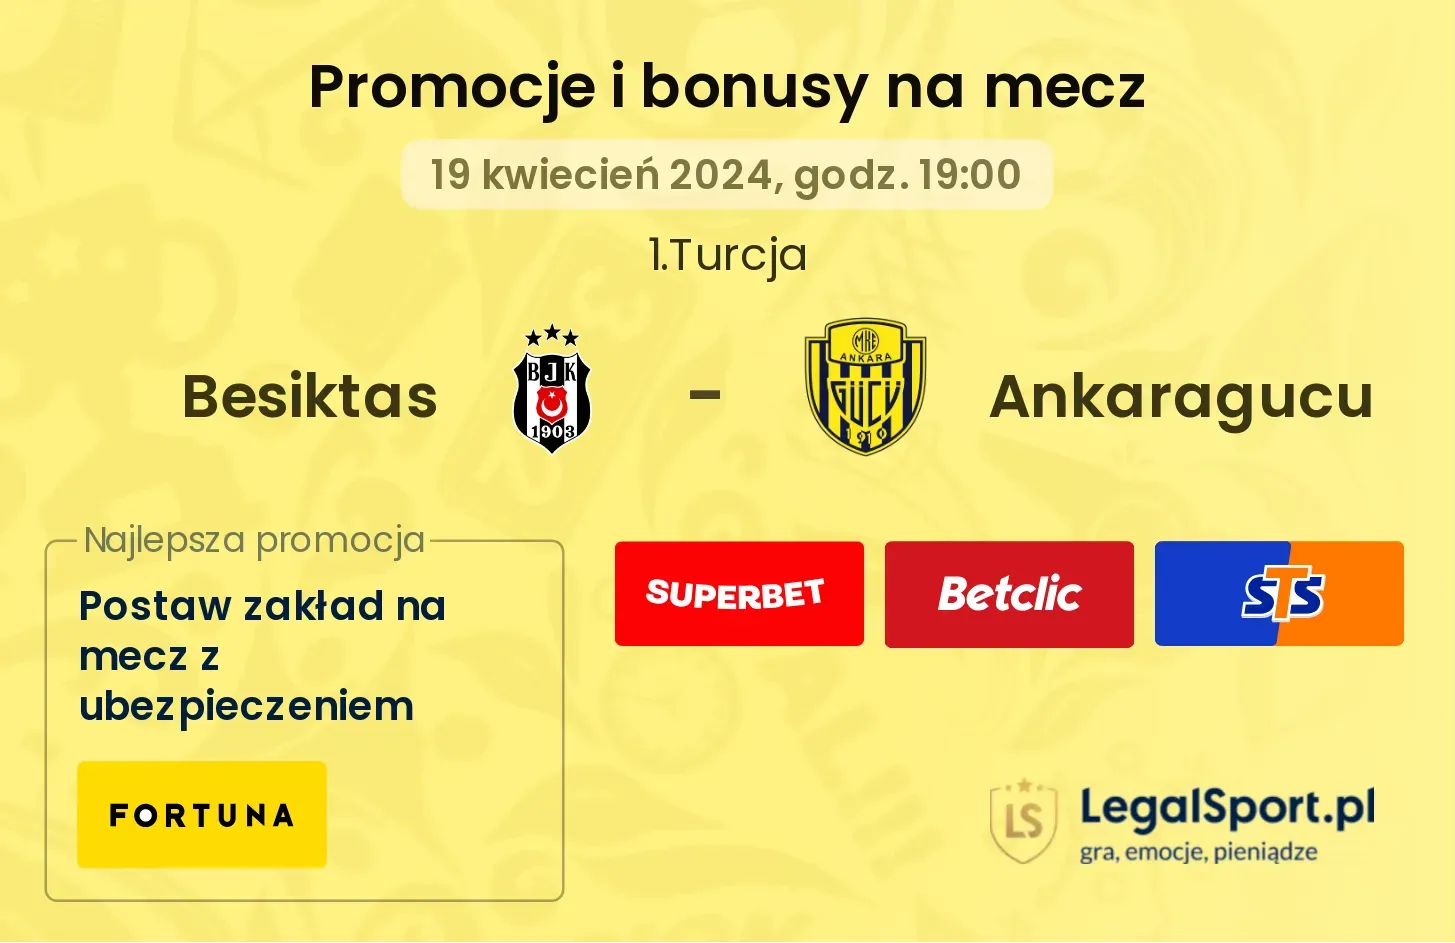 Besiktas - Ankaragucu promocje bonusy na mecz